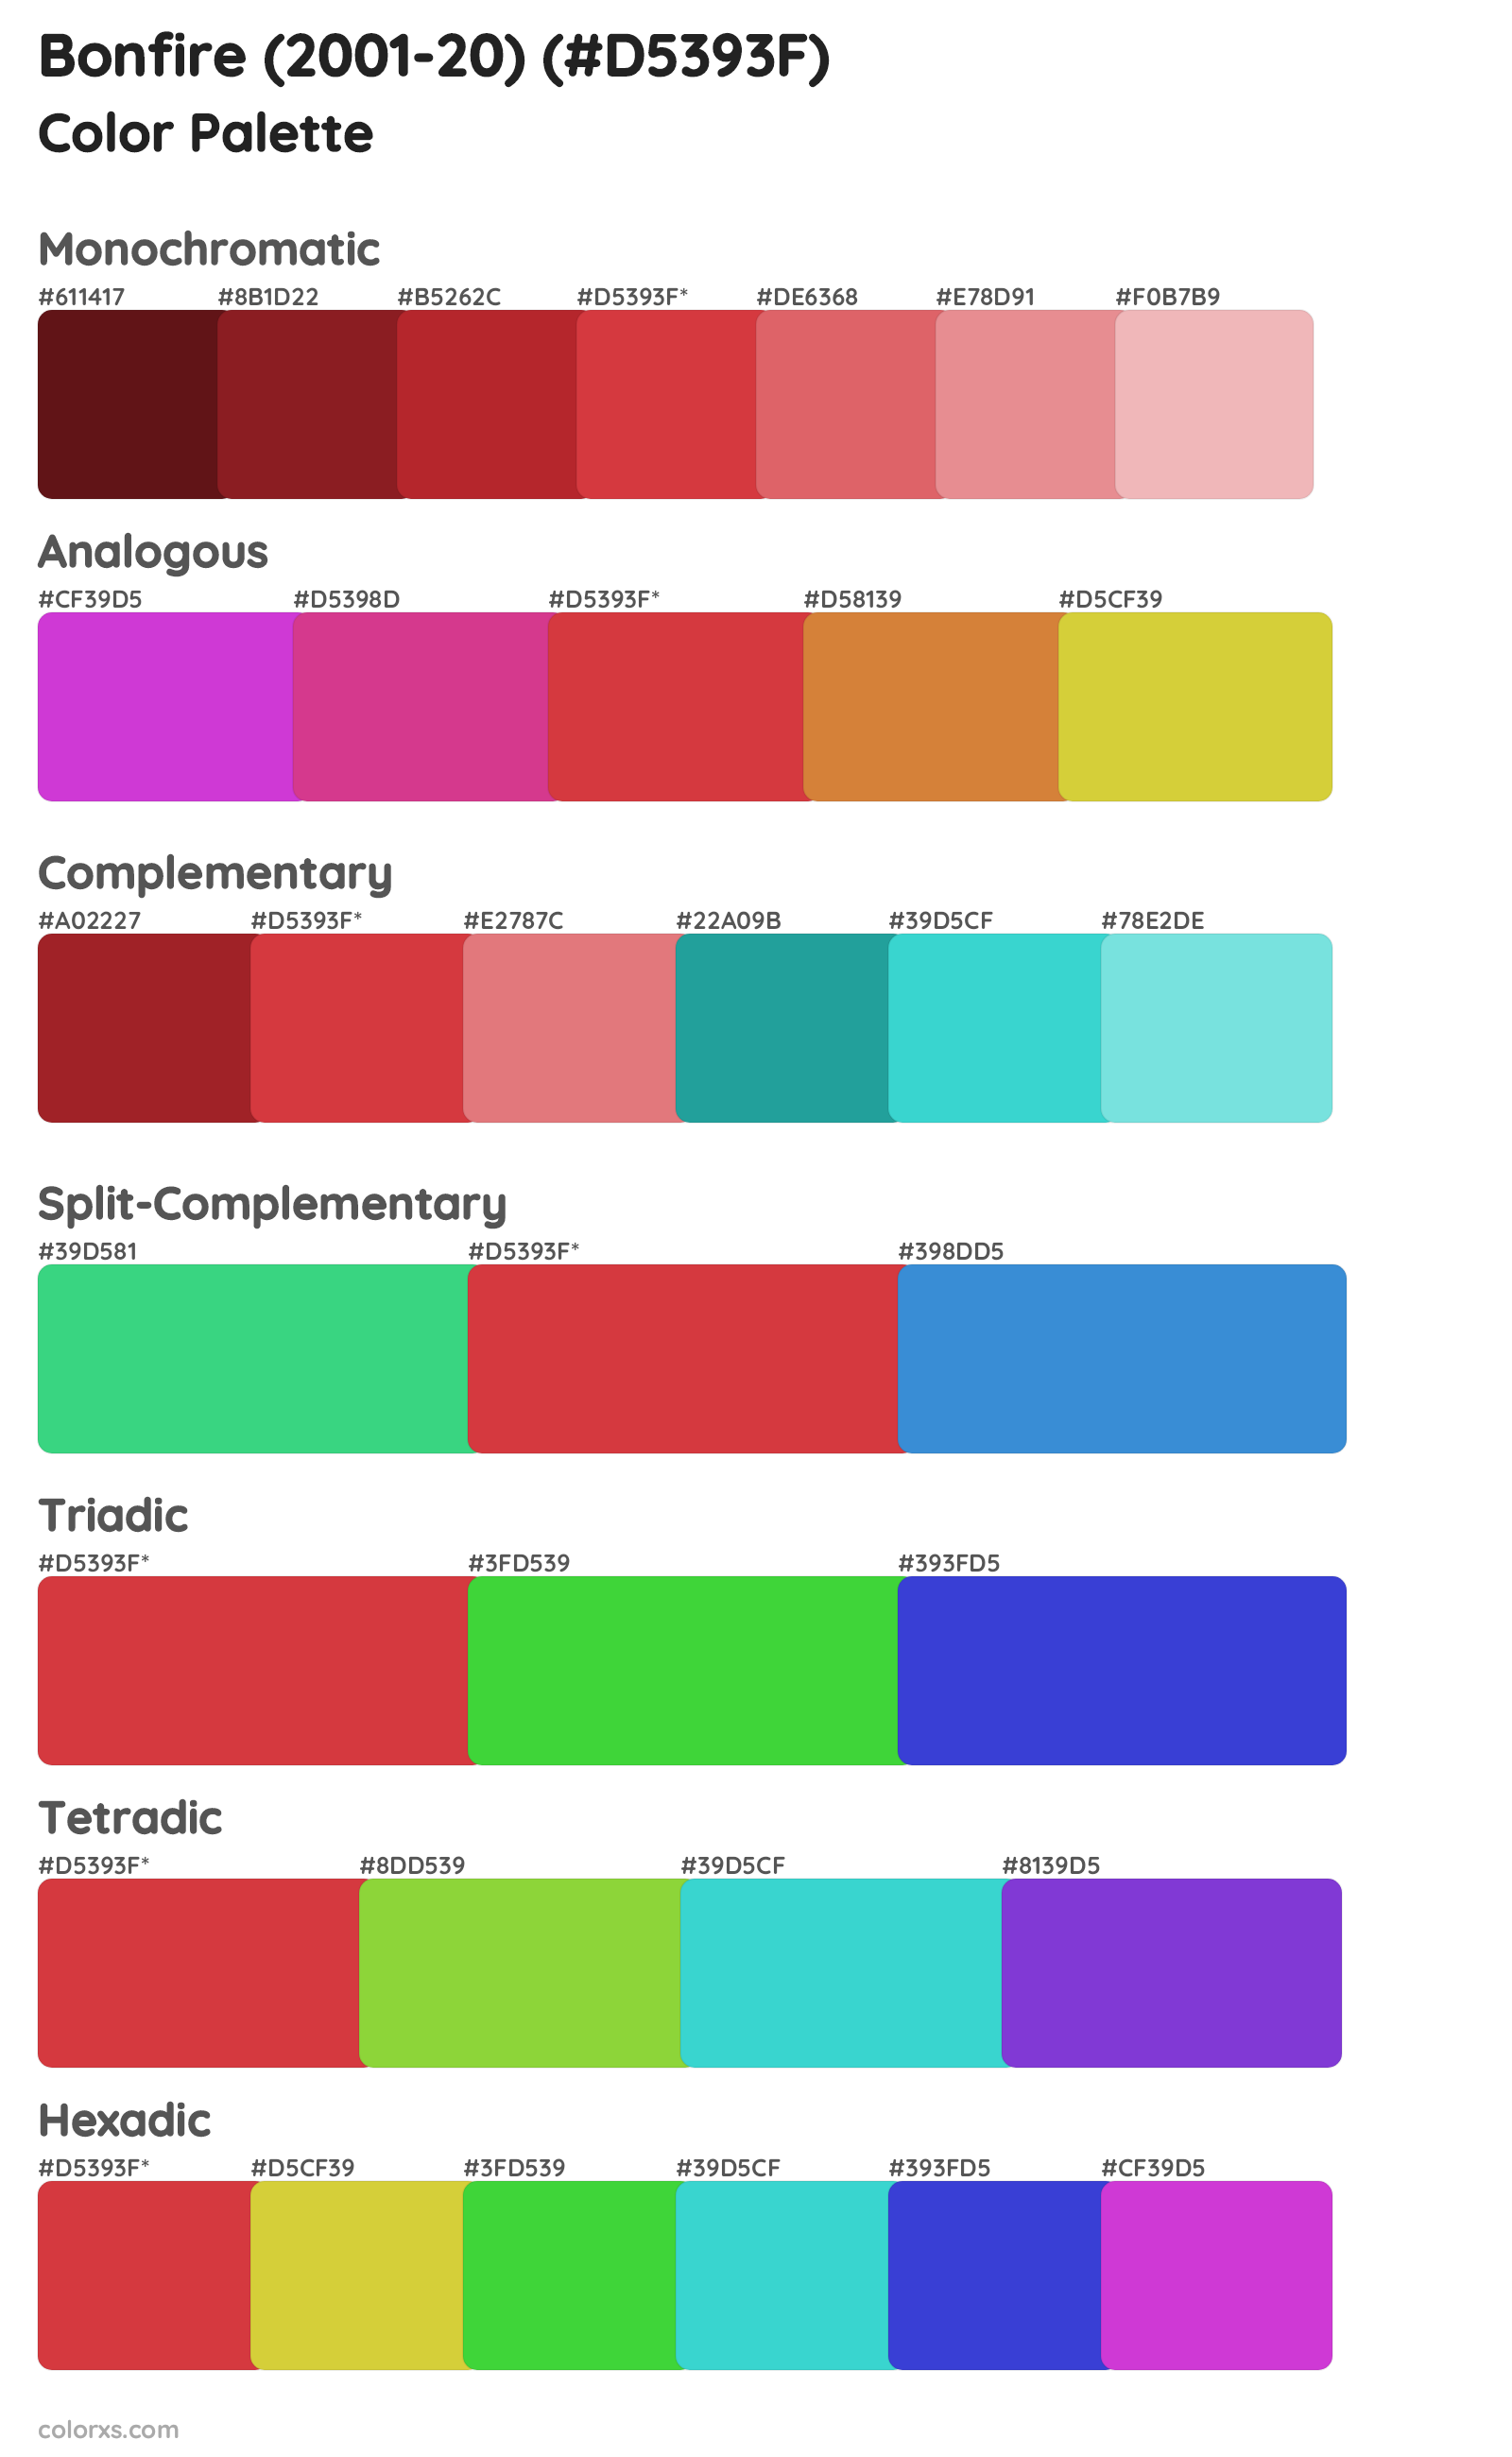 Bonfire (2001-20) Color Scheme Palettes